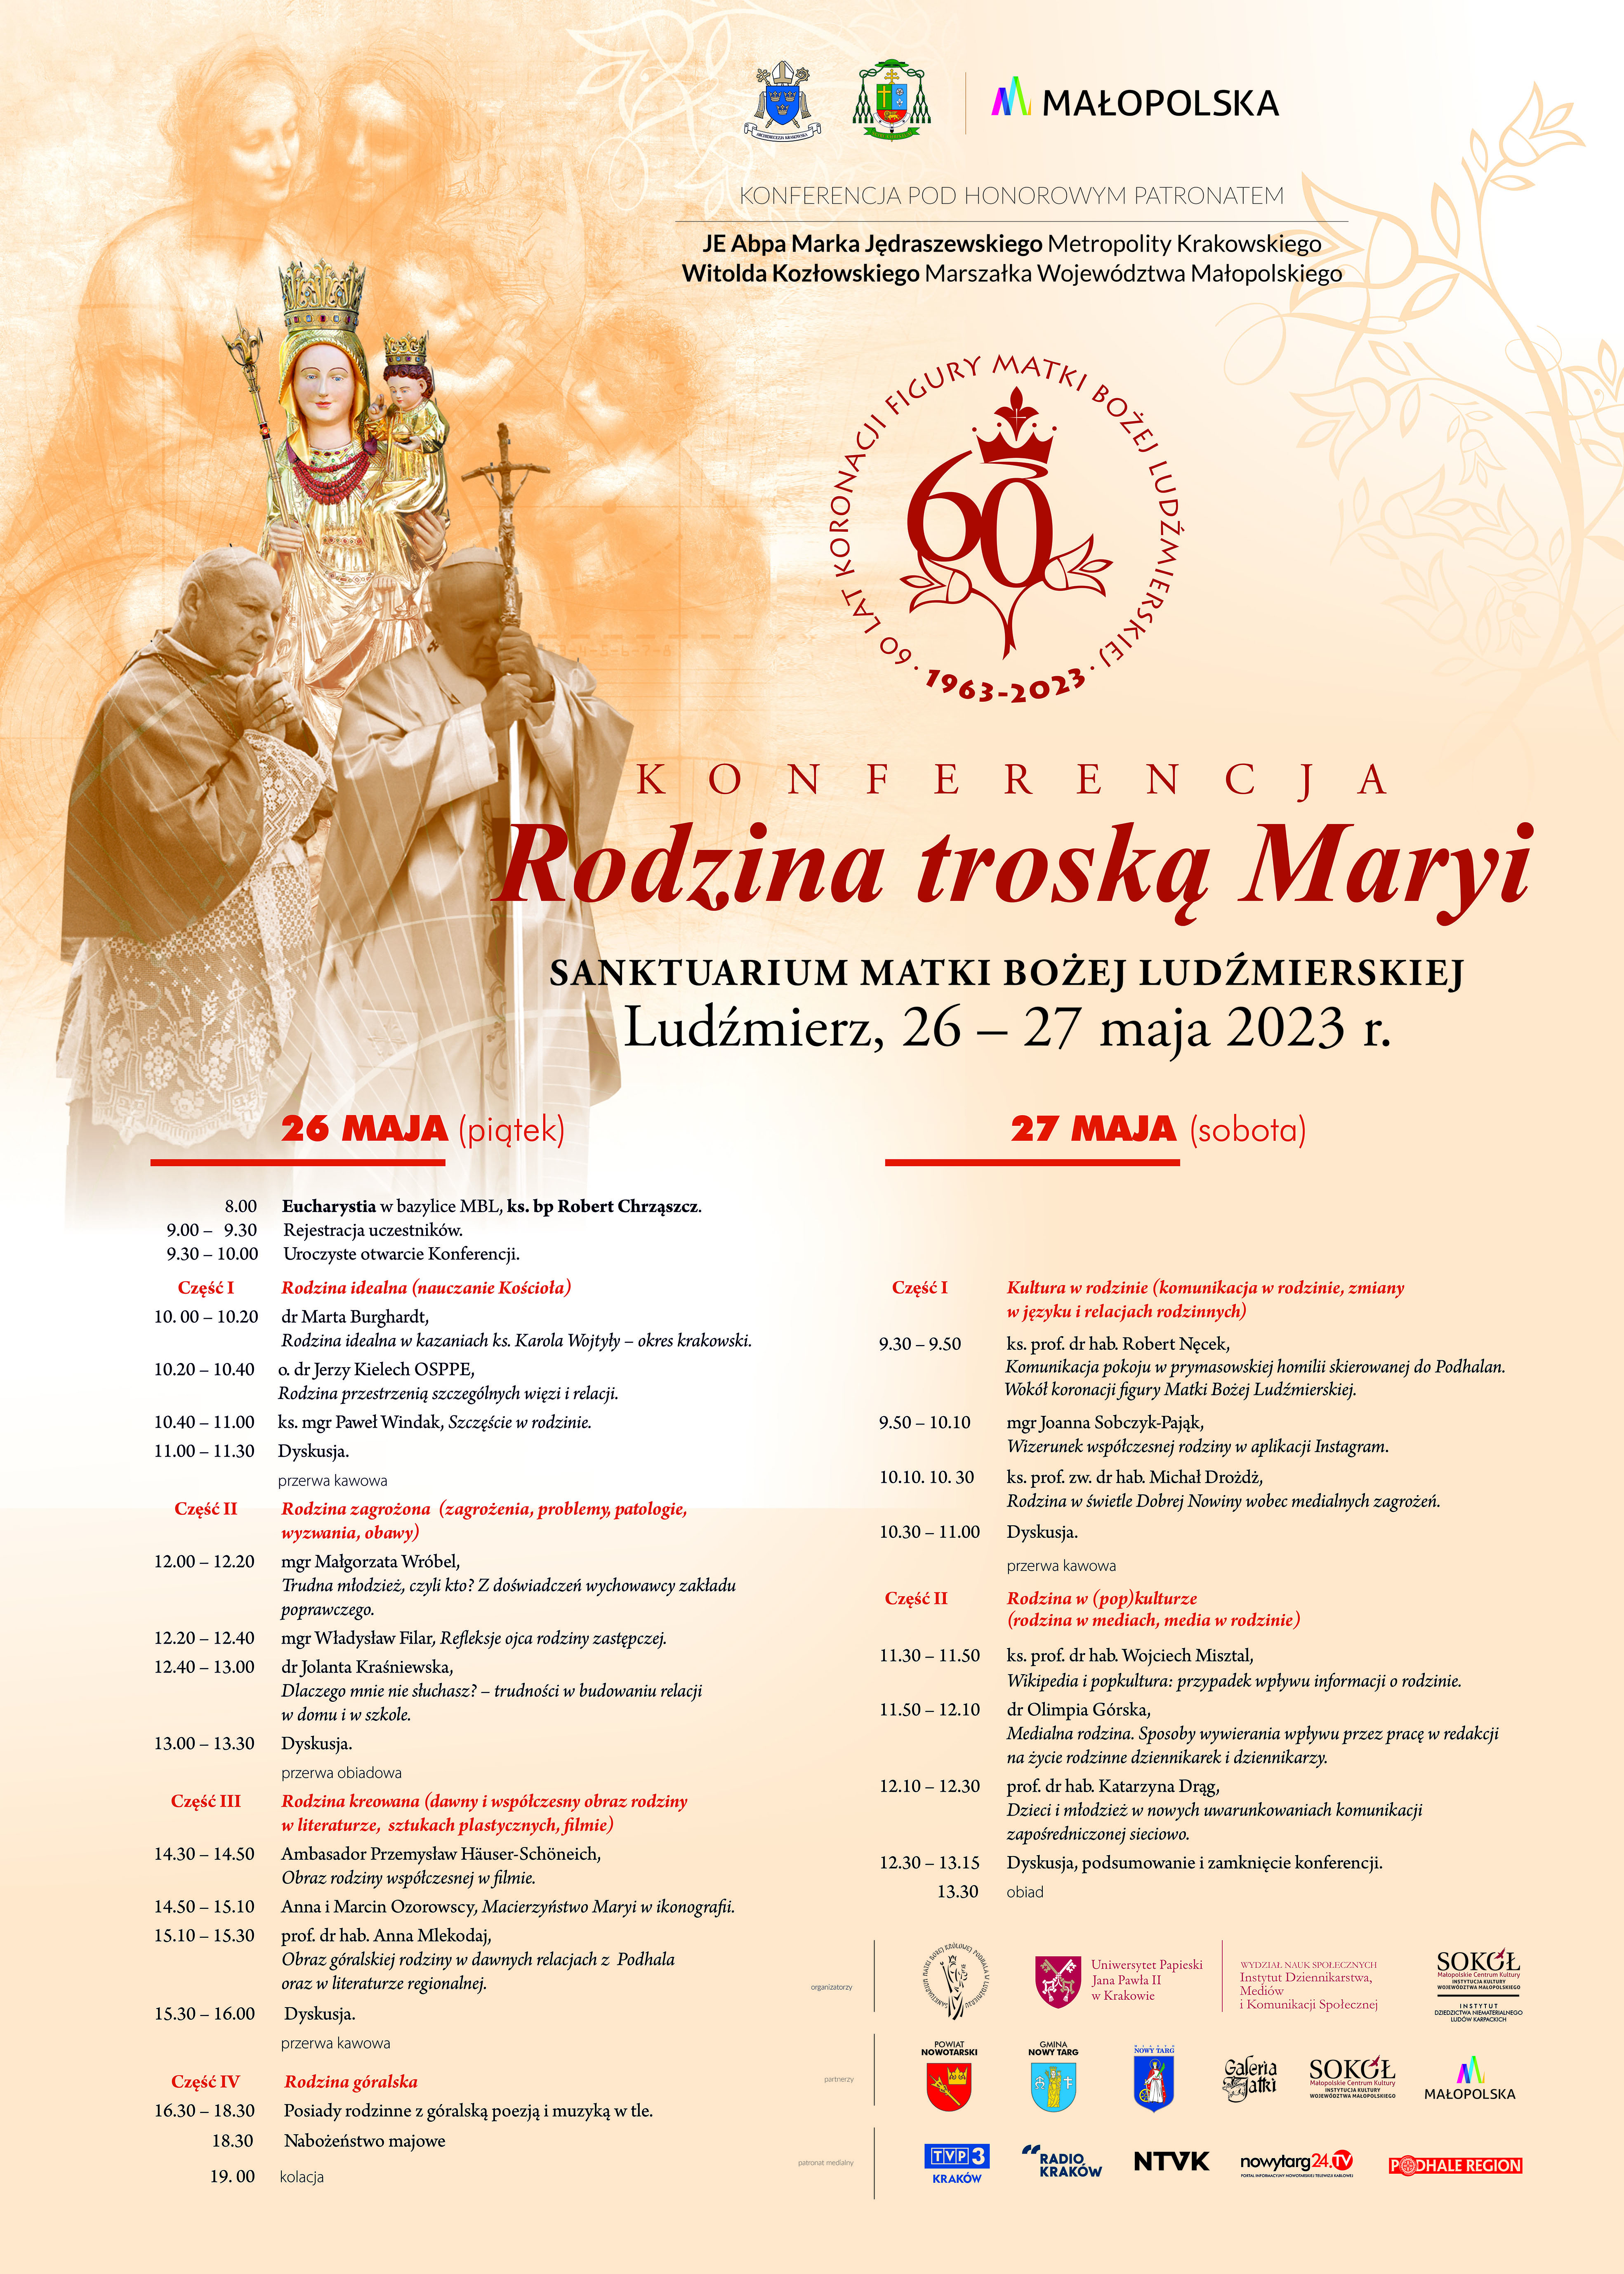 Konferencja naukowa “Rodzina troską Maryi”